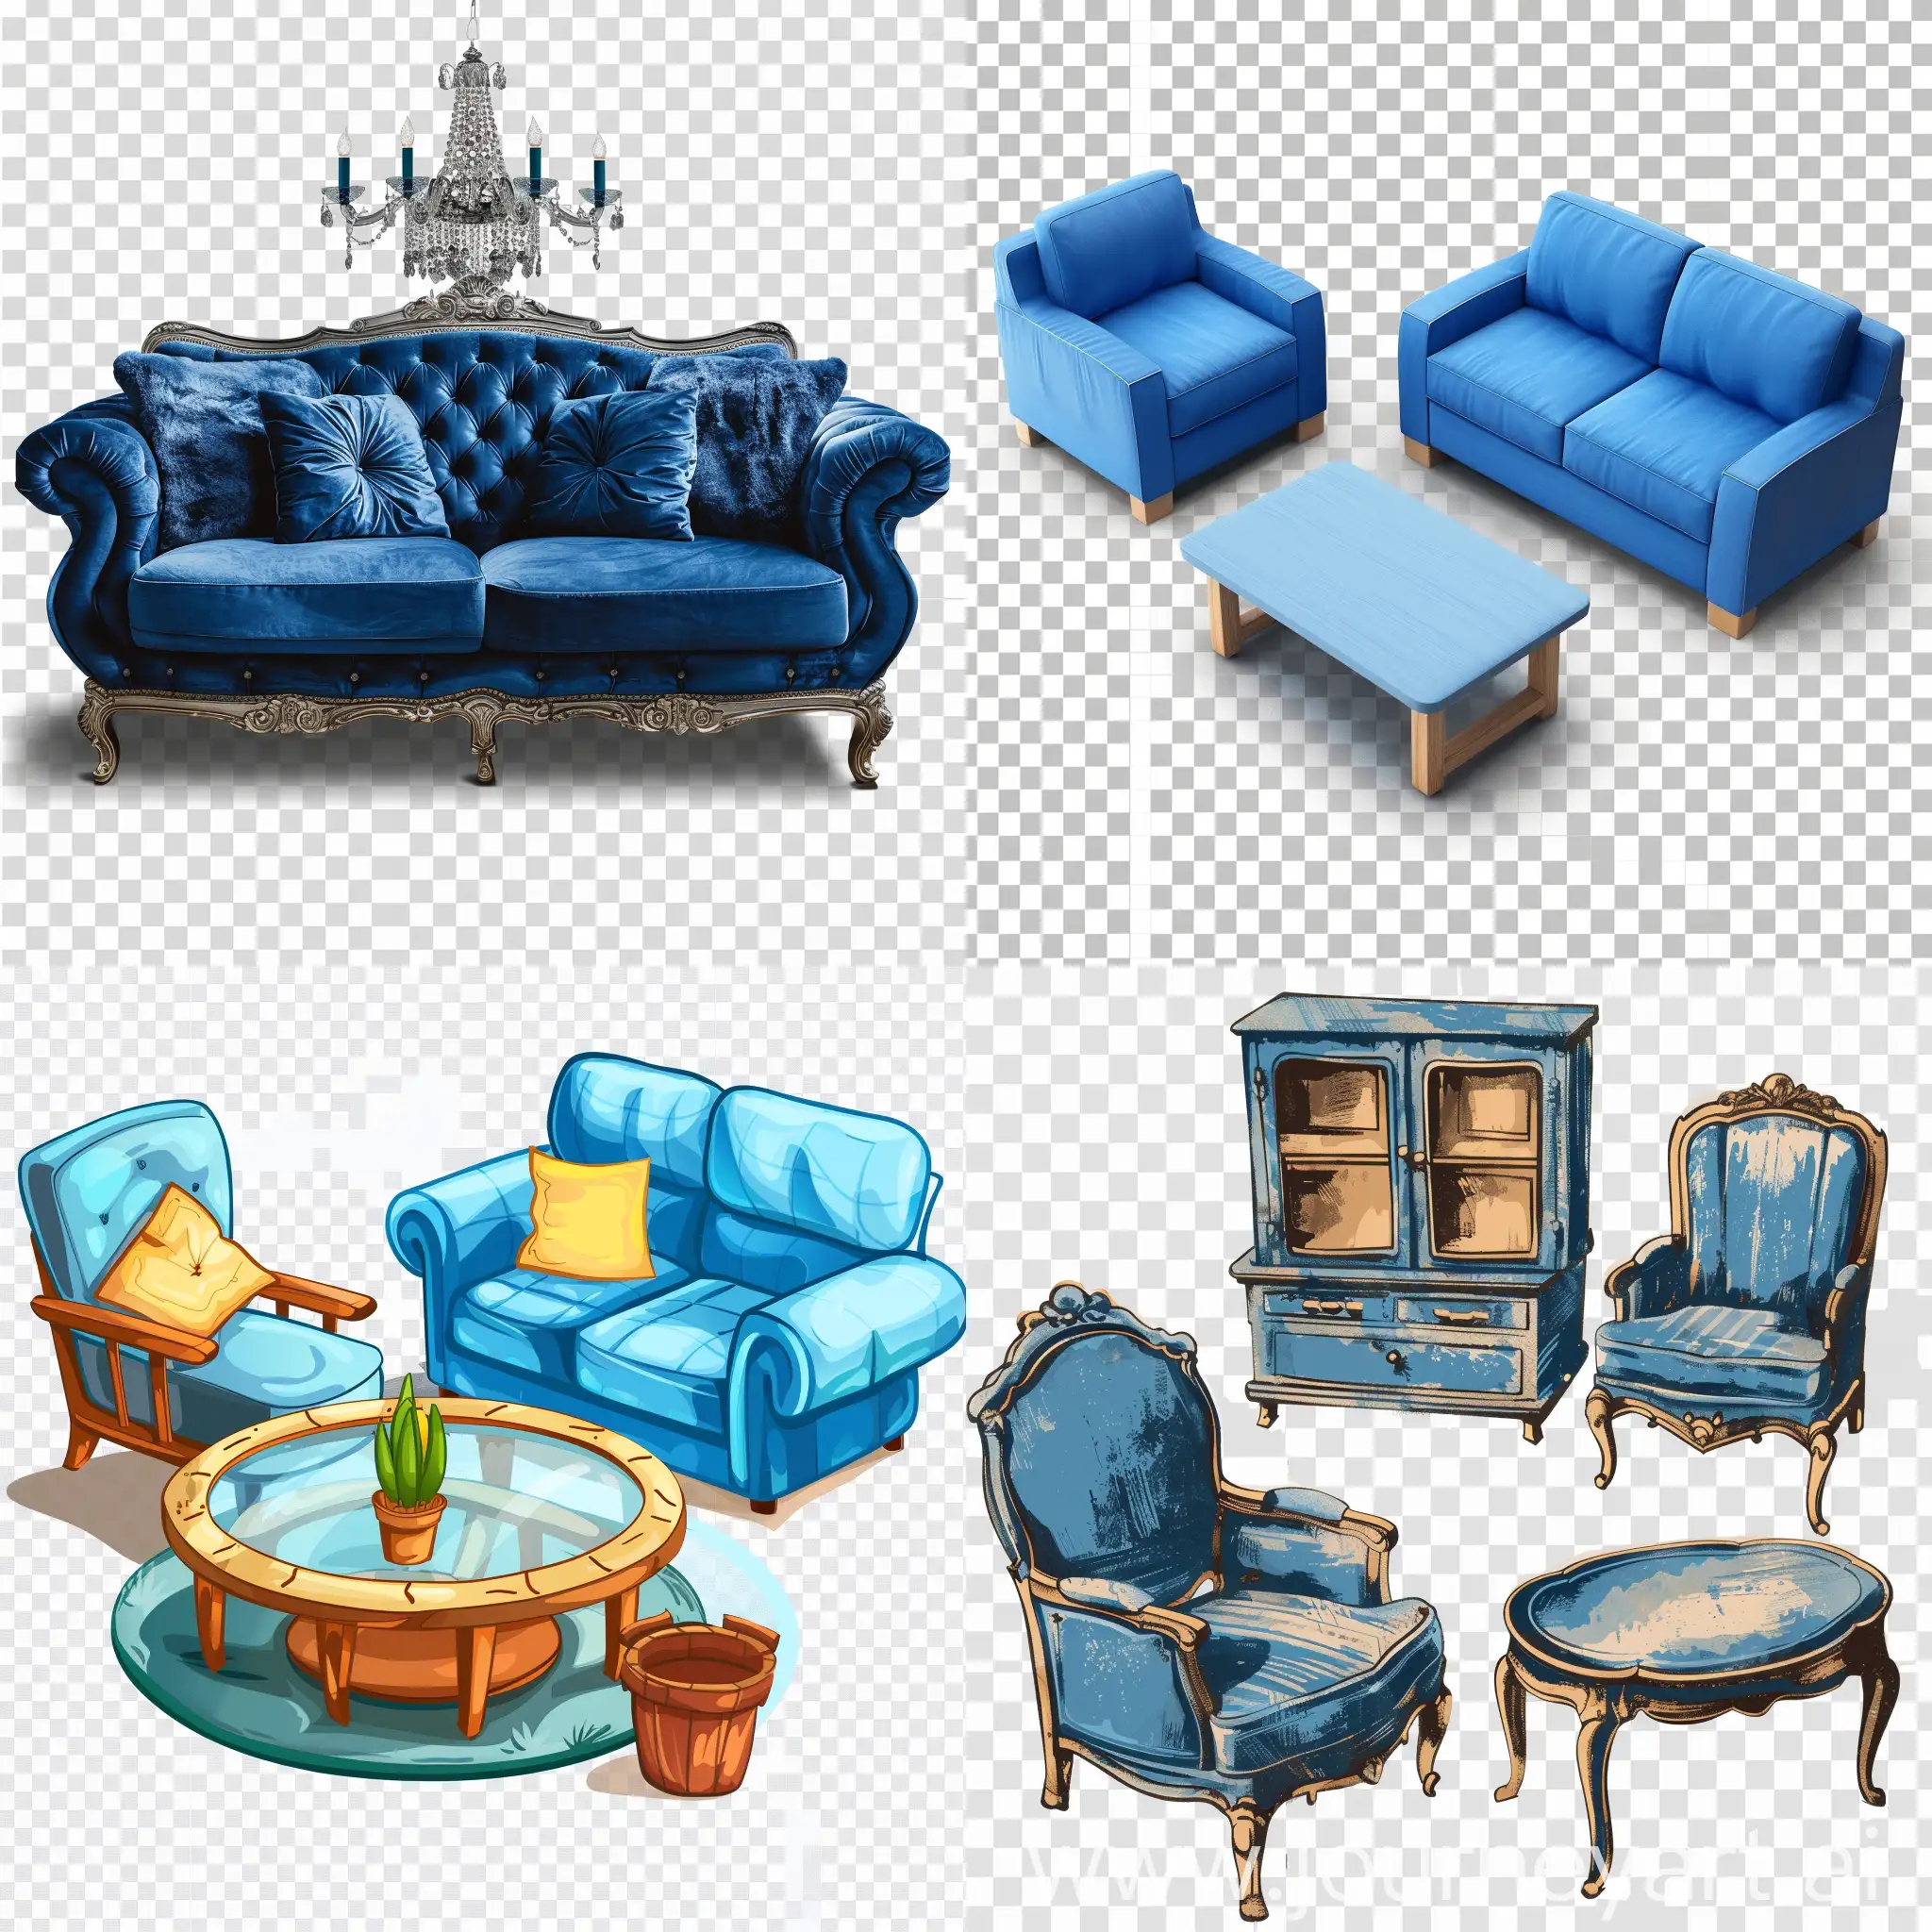 создай png картинку на тему мебели на прозрачном фоне, она должна содержать синий цвет и содержать изображение какой-либо мебели